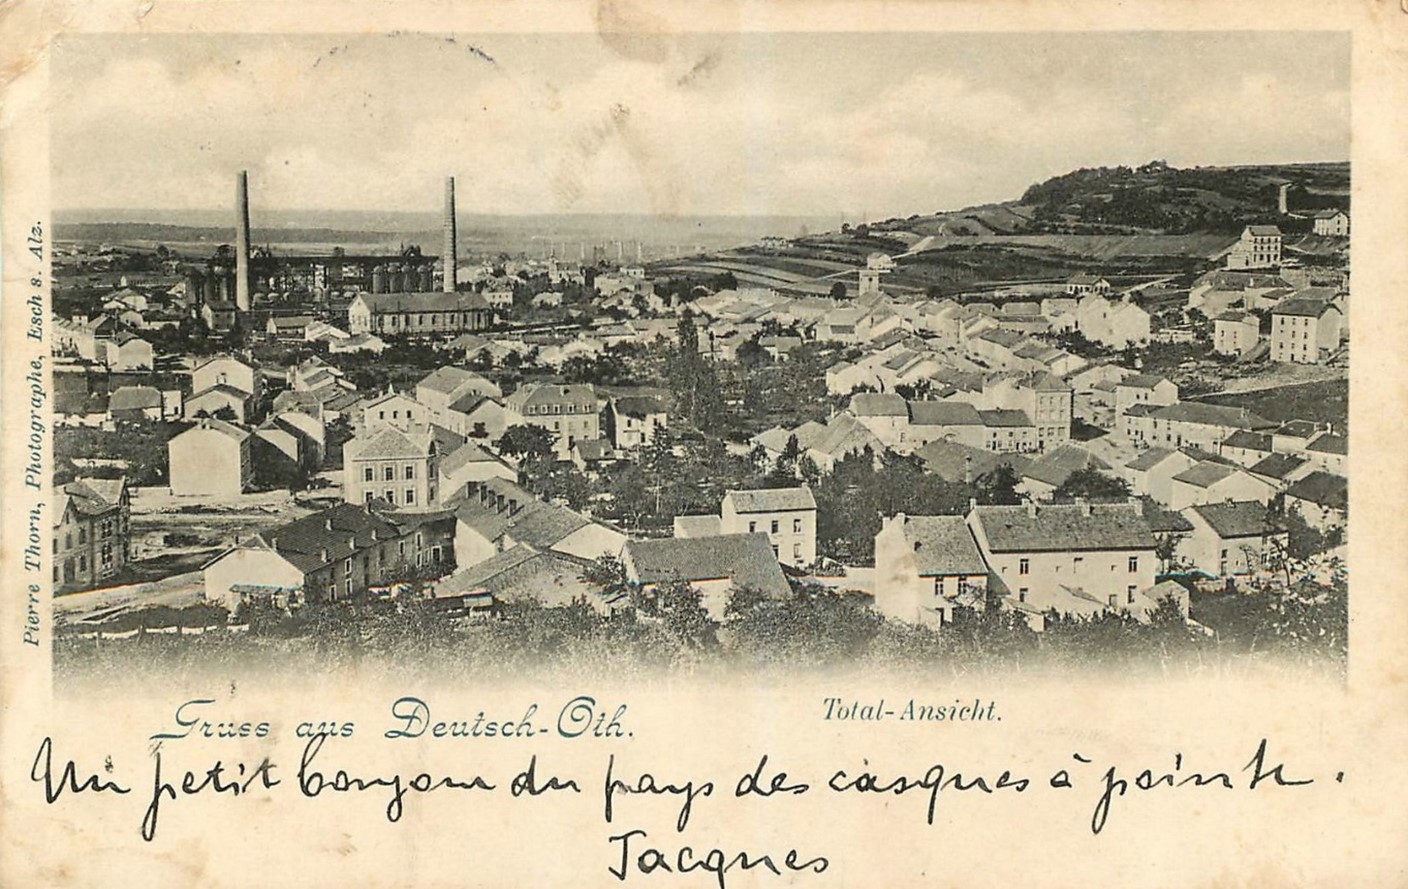 Vue sur les installations sidérurgiques d’Audun-le-Tiche (Deutsch-Oth) où furent exploités des prisonniers italiens à partir de février 1918